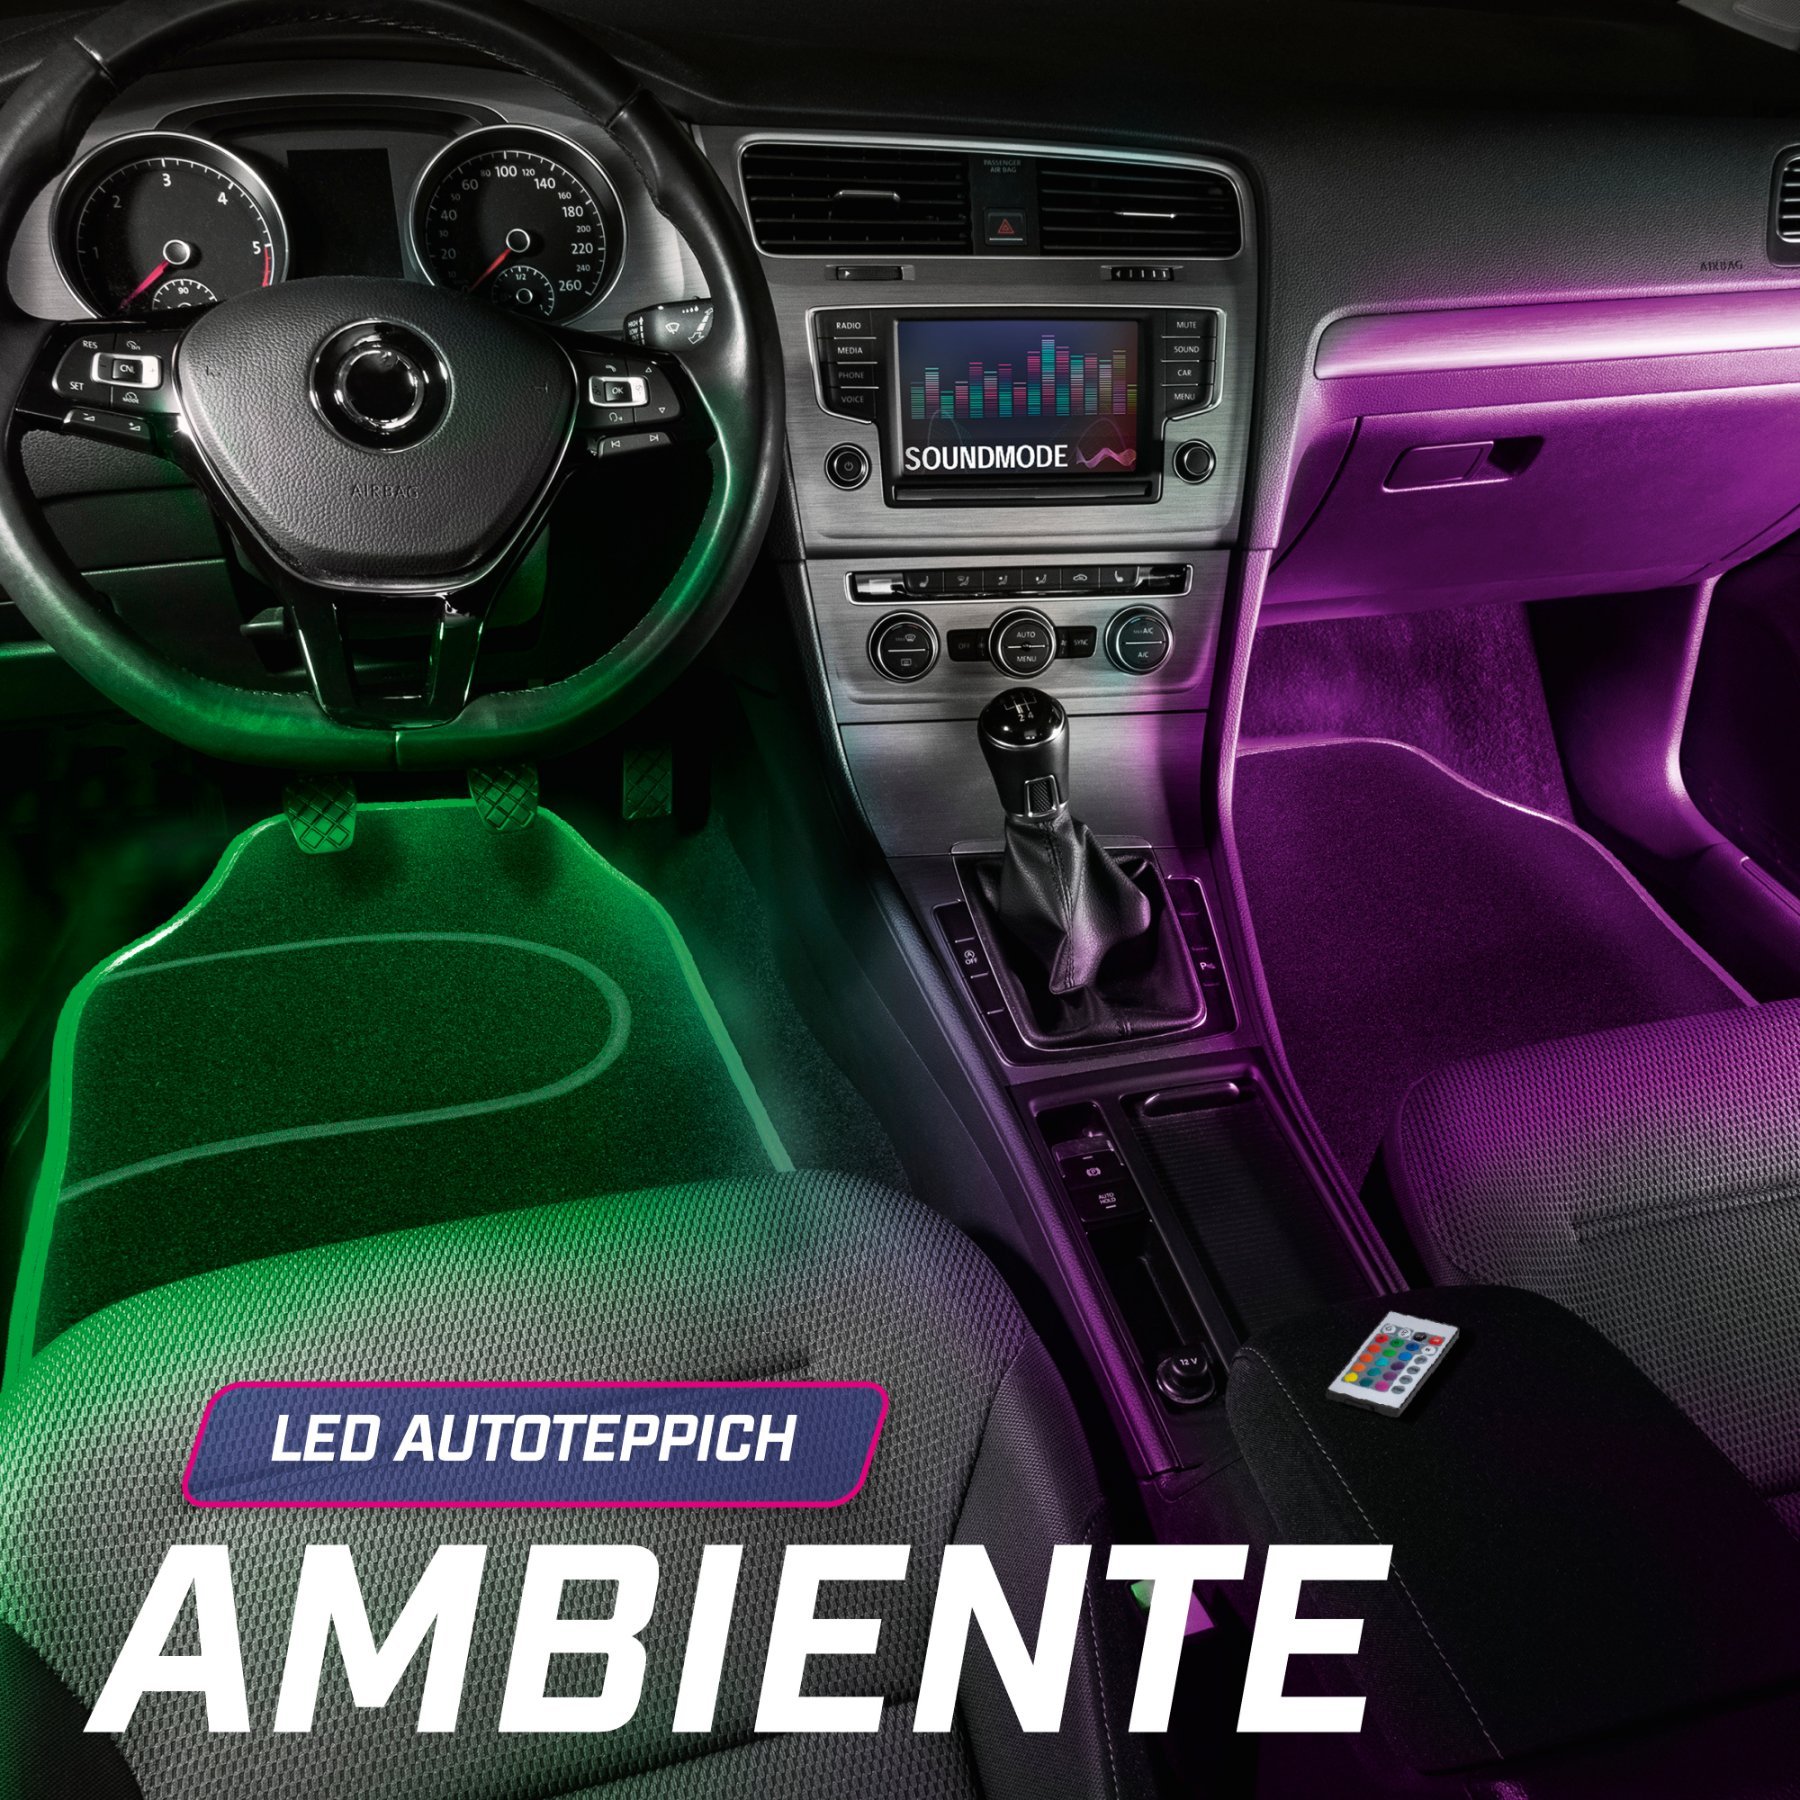 LED-Autoteppich Ambiente mit Farbauswahl, PKW-Fußmatte mit Lichtfunktionen und Fernbedienung